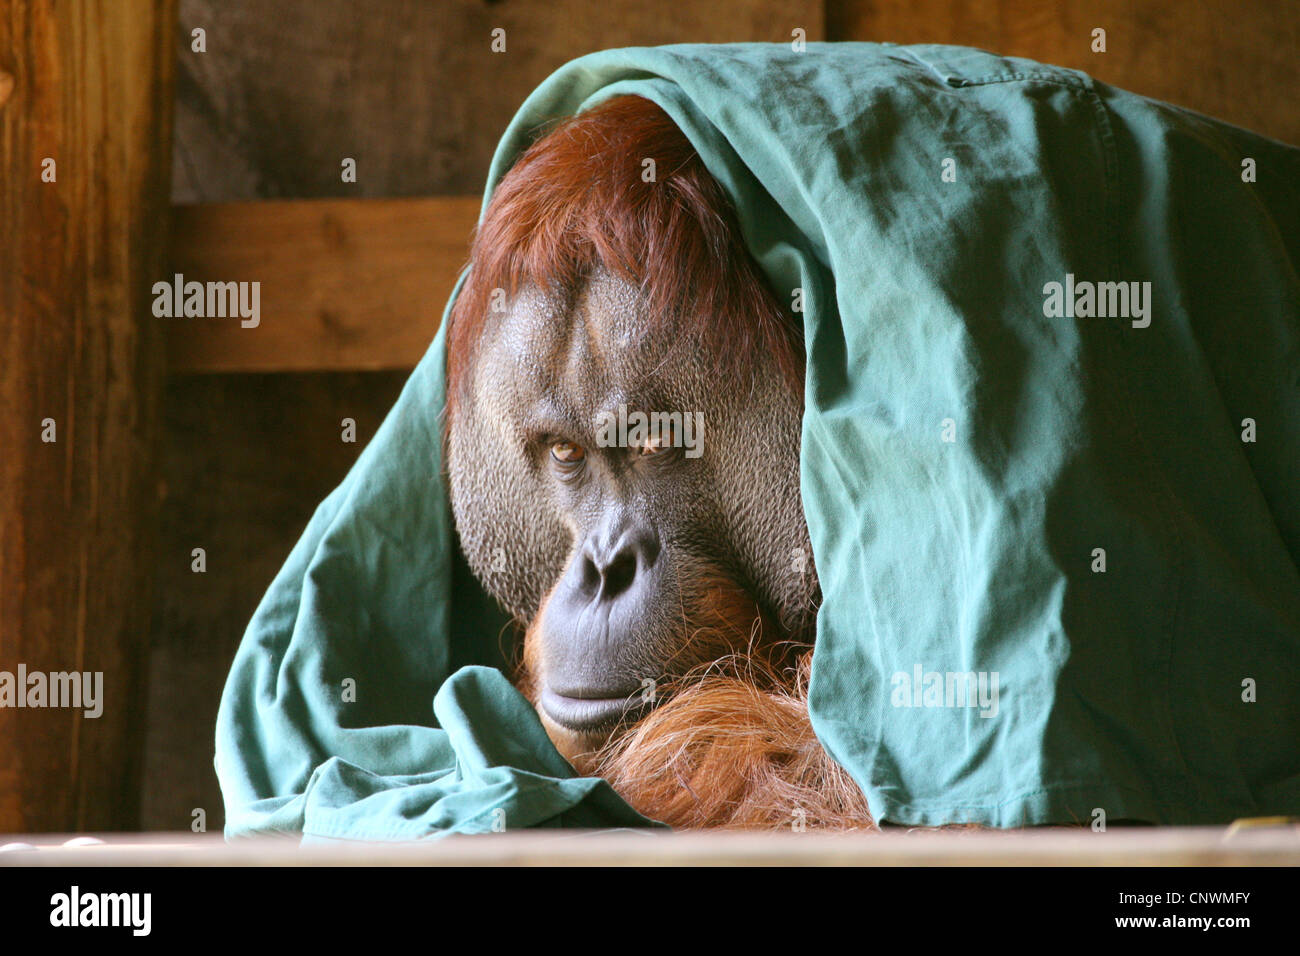 Sumatran orangutan (Pongo pygmaeus abelii, Pongo abelii), with the working cloth of a stockman laid on the head Stock Photo